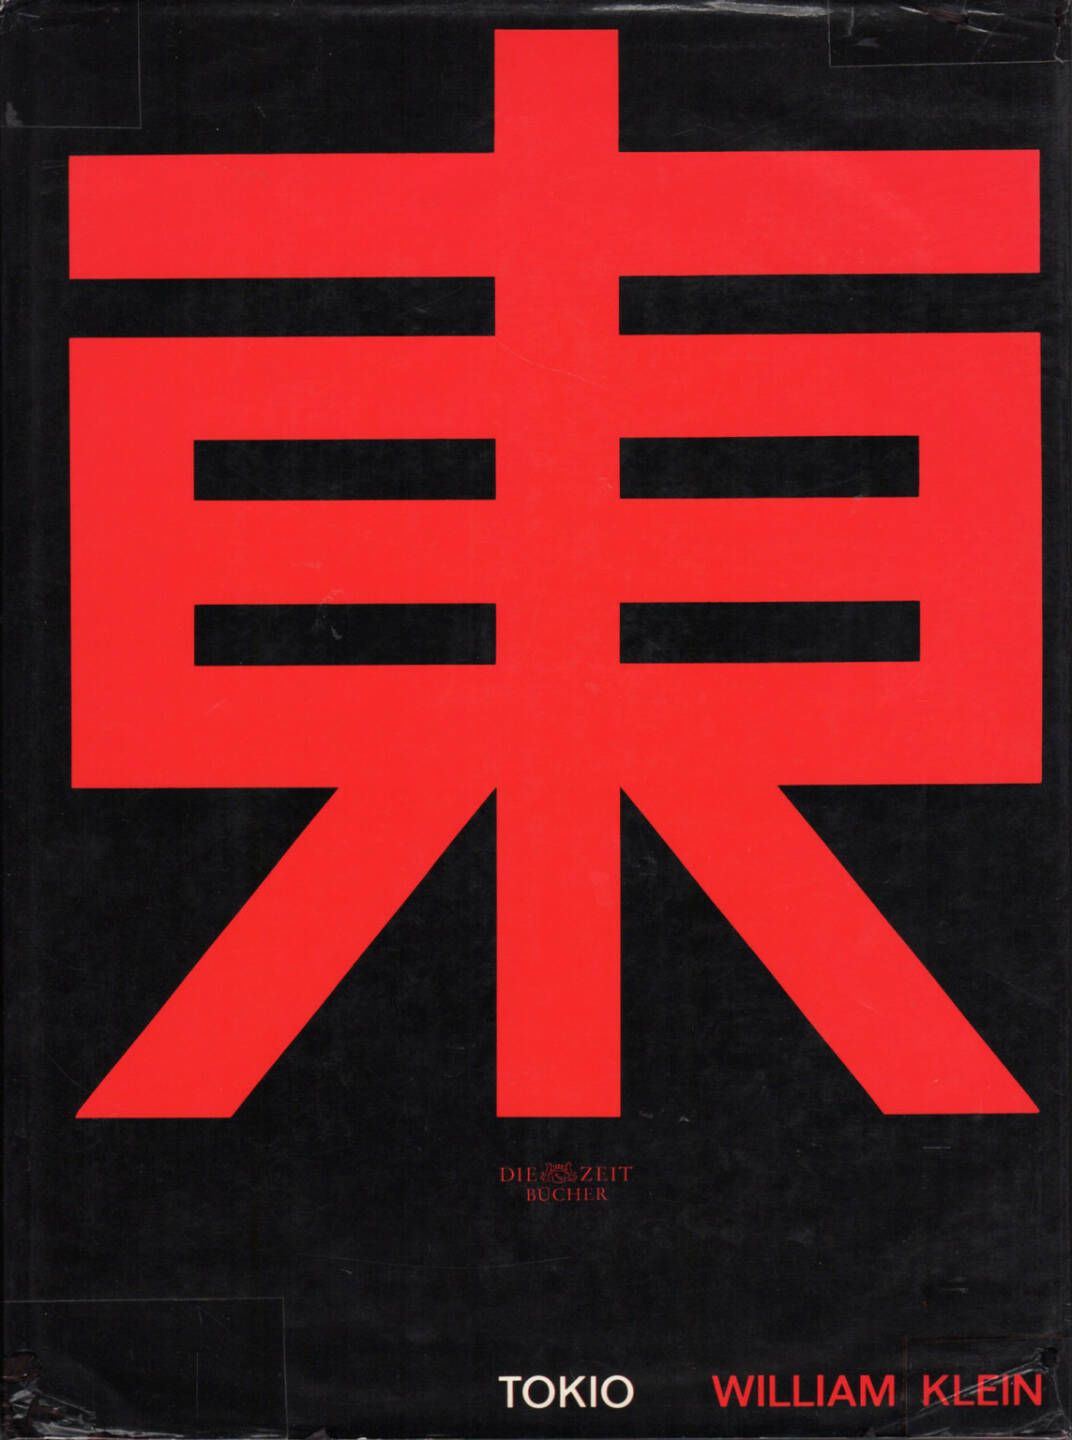 William Klein - Tokio (Tokyo), Nannen-Verlag 1965, Cover - http://josefchladek.com/book/william_klein_-_tokio_tokyo